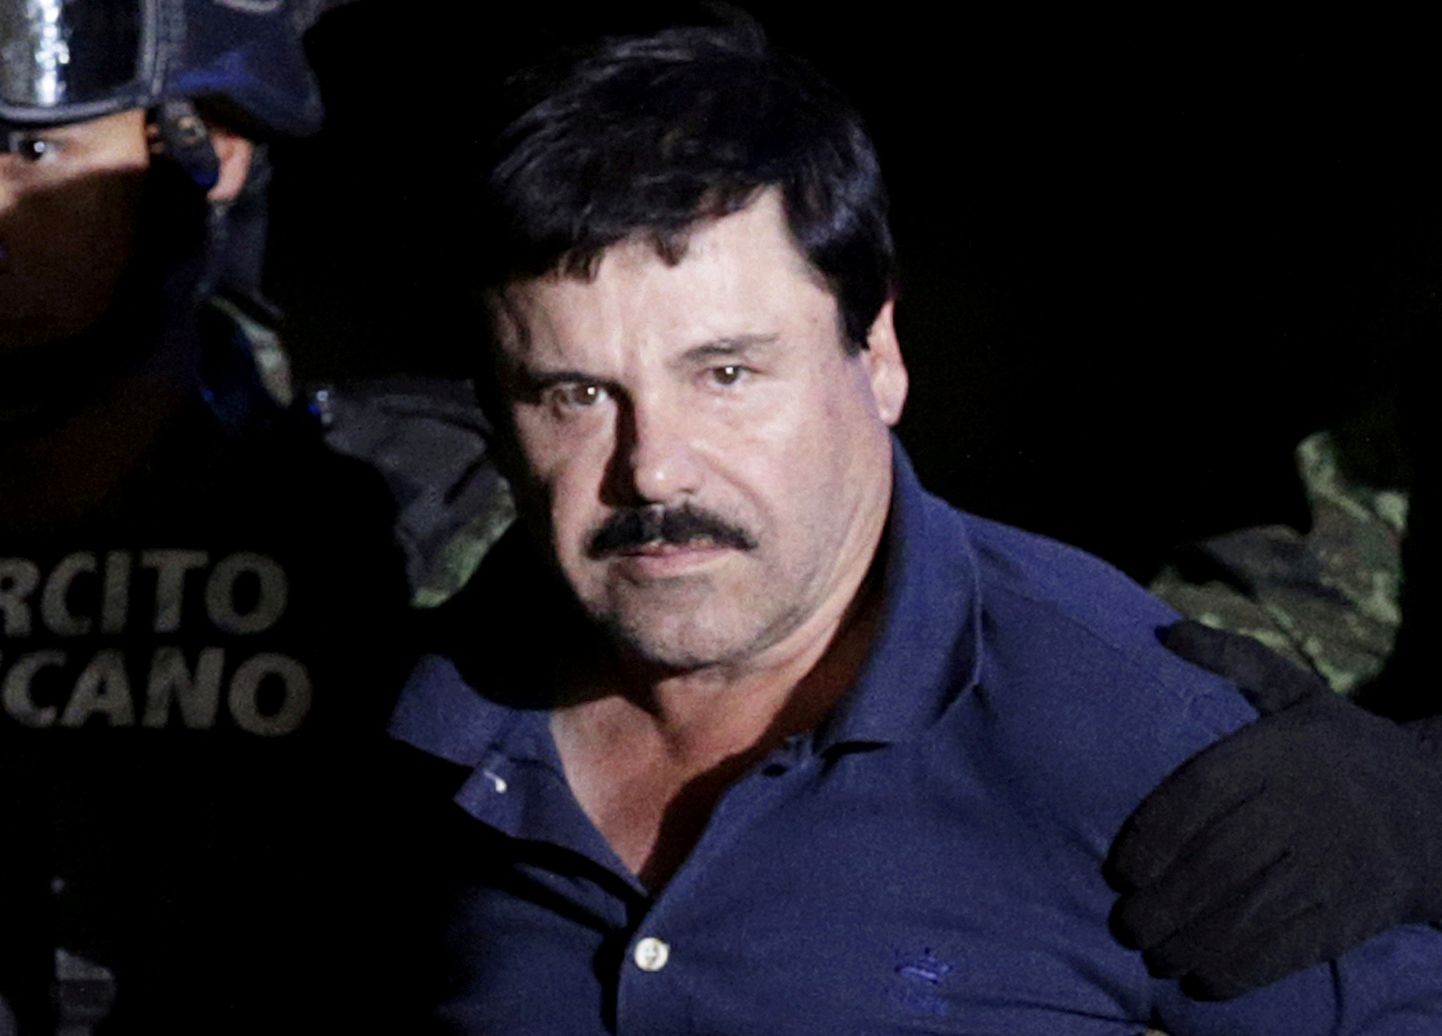 El Chapo veedab ülejäänud elu trellide taga.